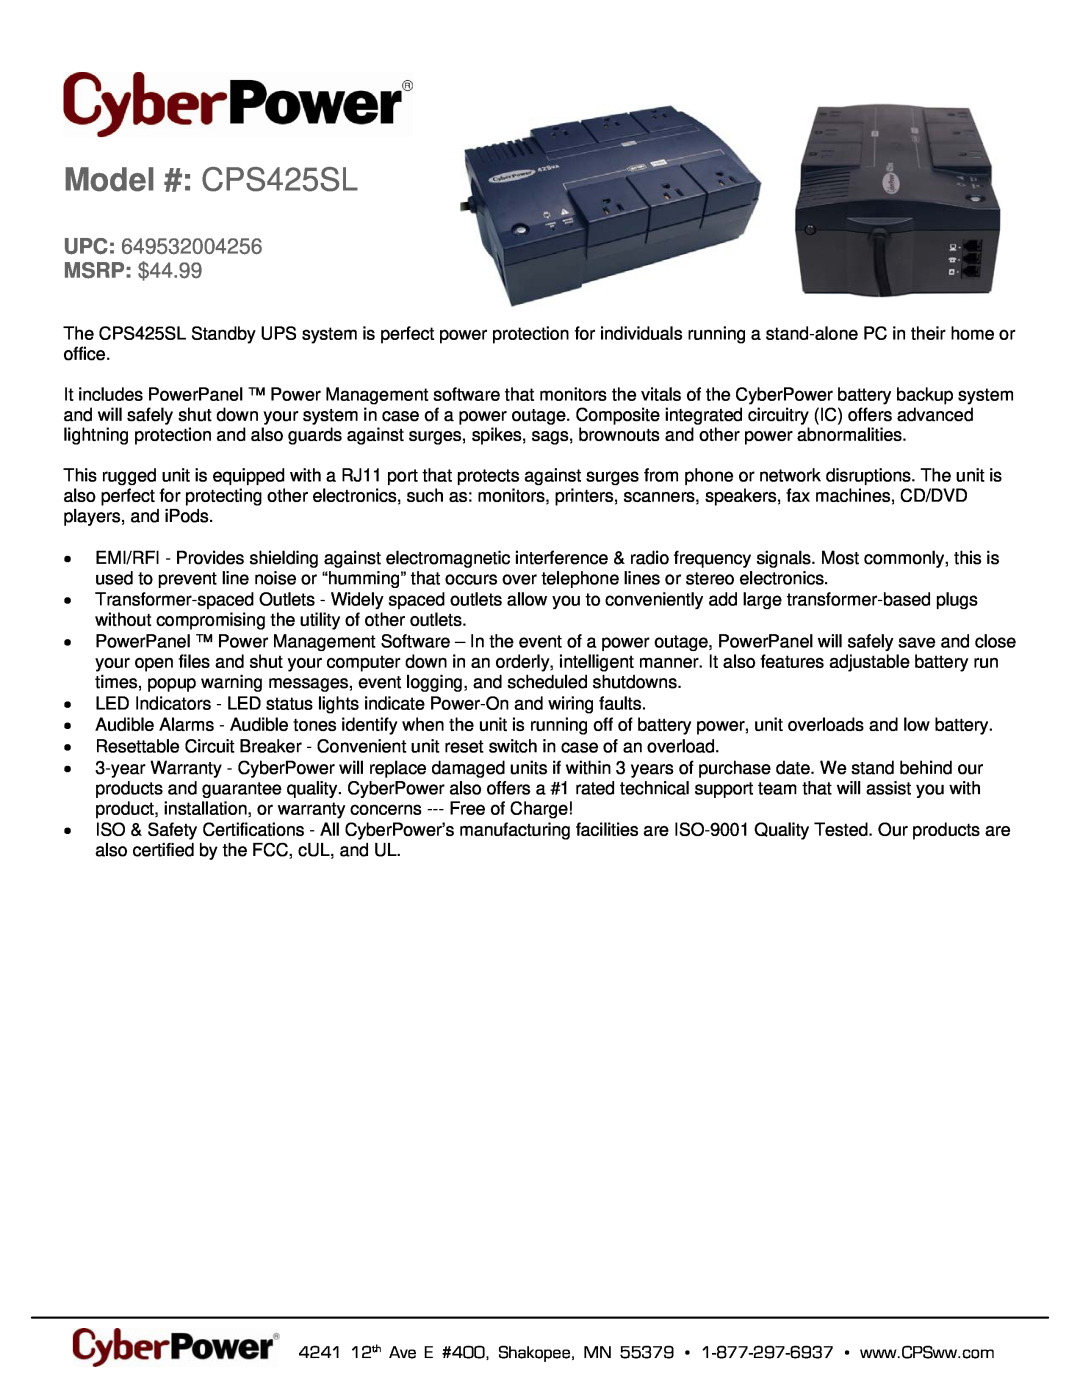 CyberPower Systems 649532004256 warranty Model # CPS425SL, MSRP $44.99 